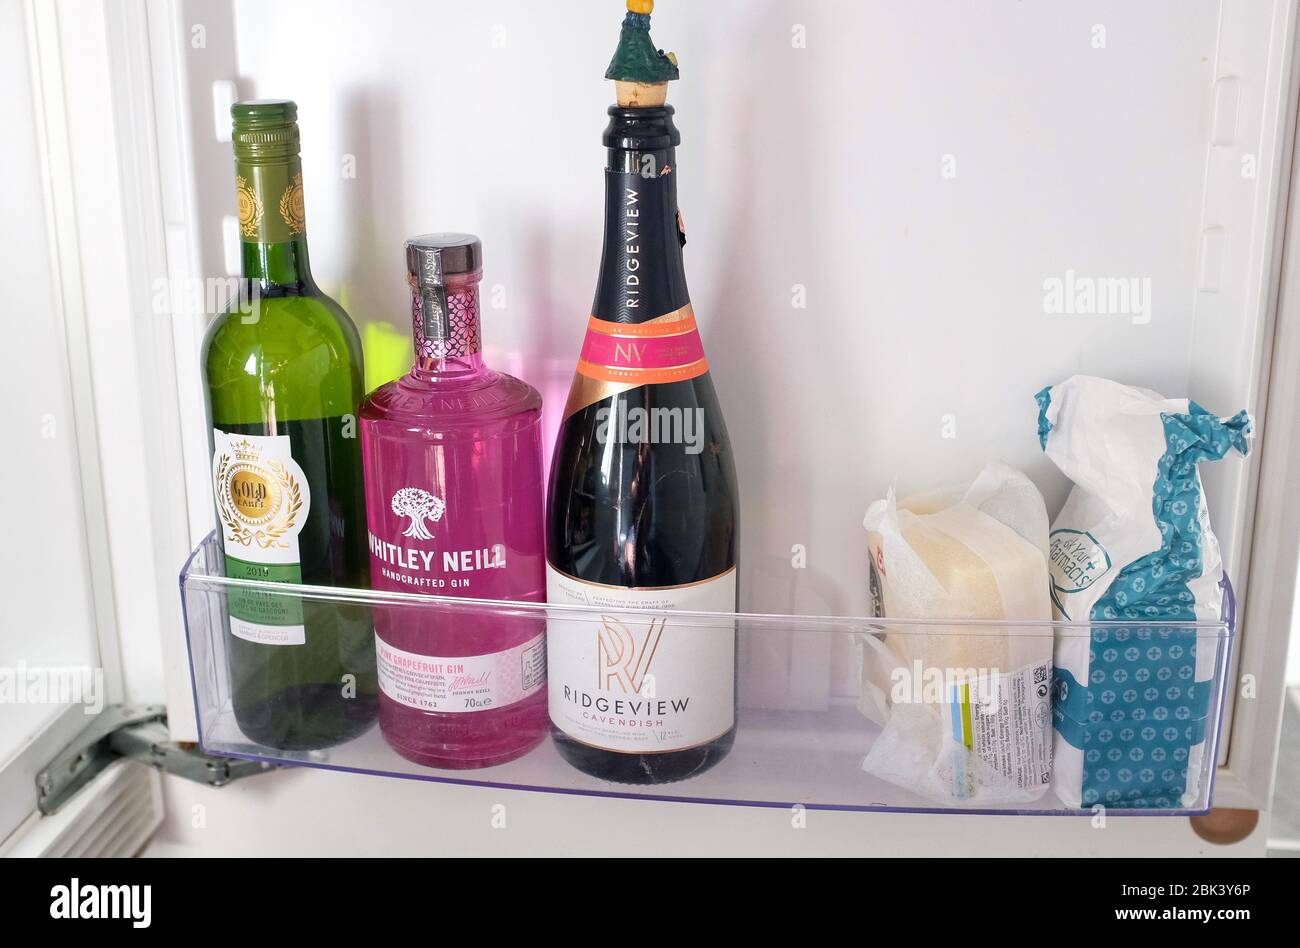 Flaschen Wein Gin und Ridgeview Englisch Sekt in einem kalten Kühlschrank  Stockfotografie - Alamy